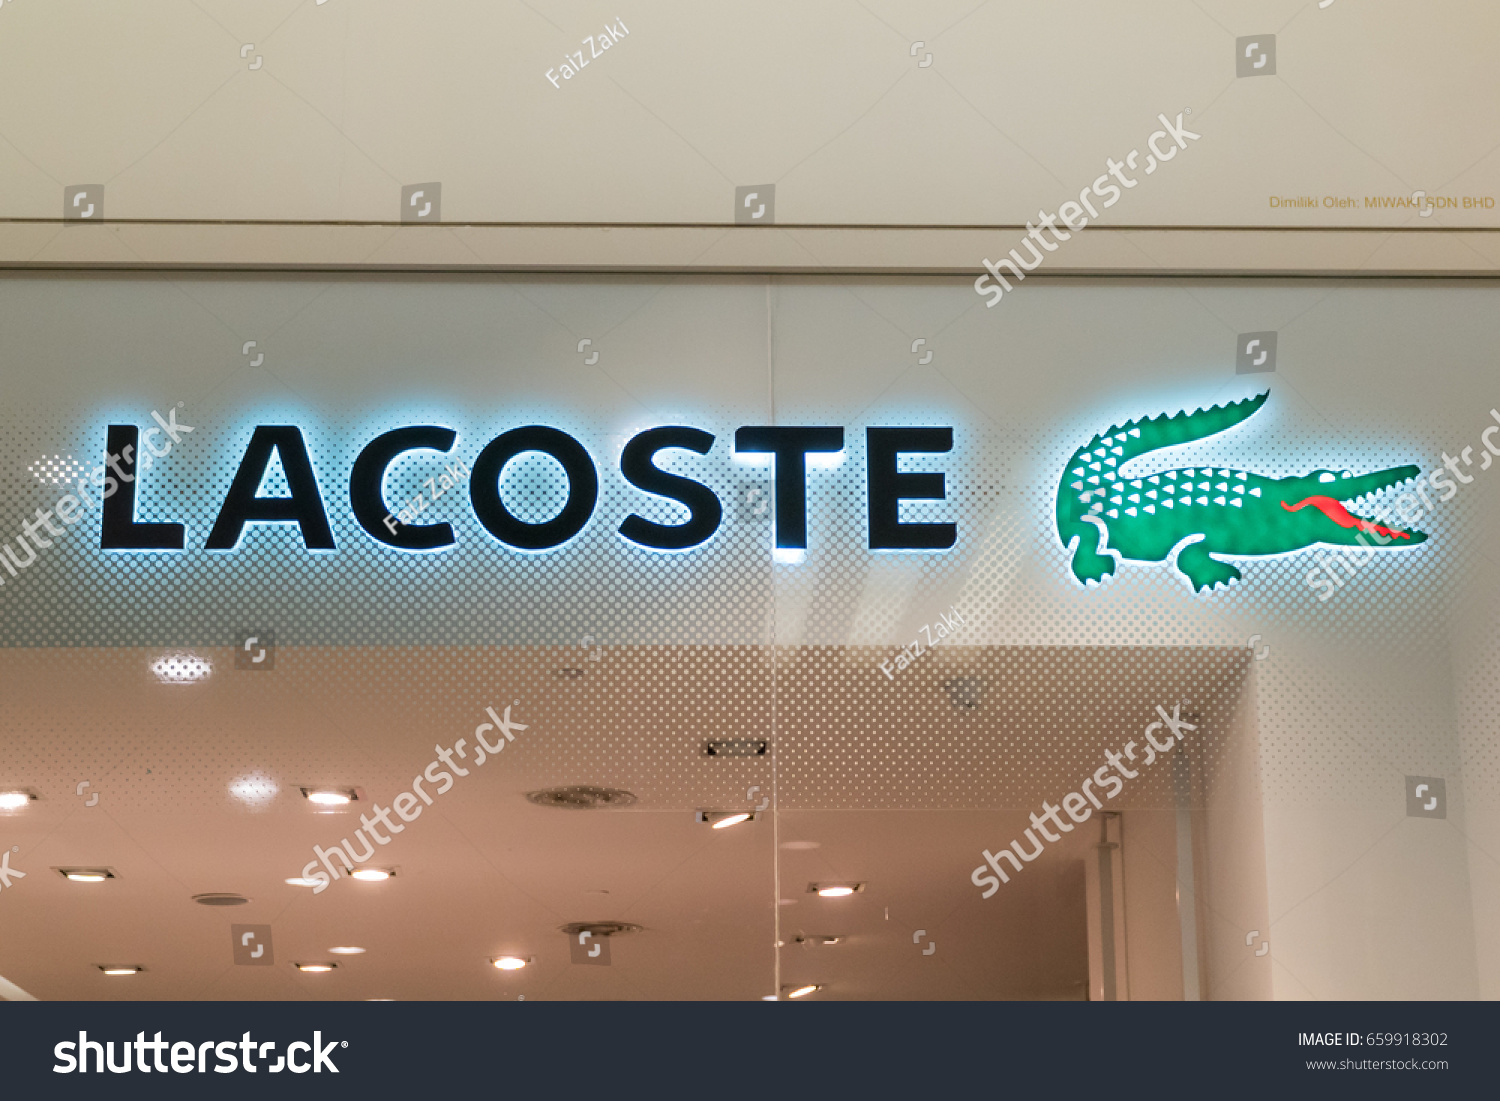 lacoste one utama